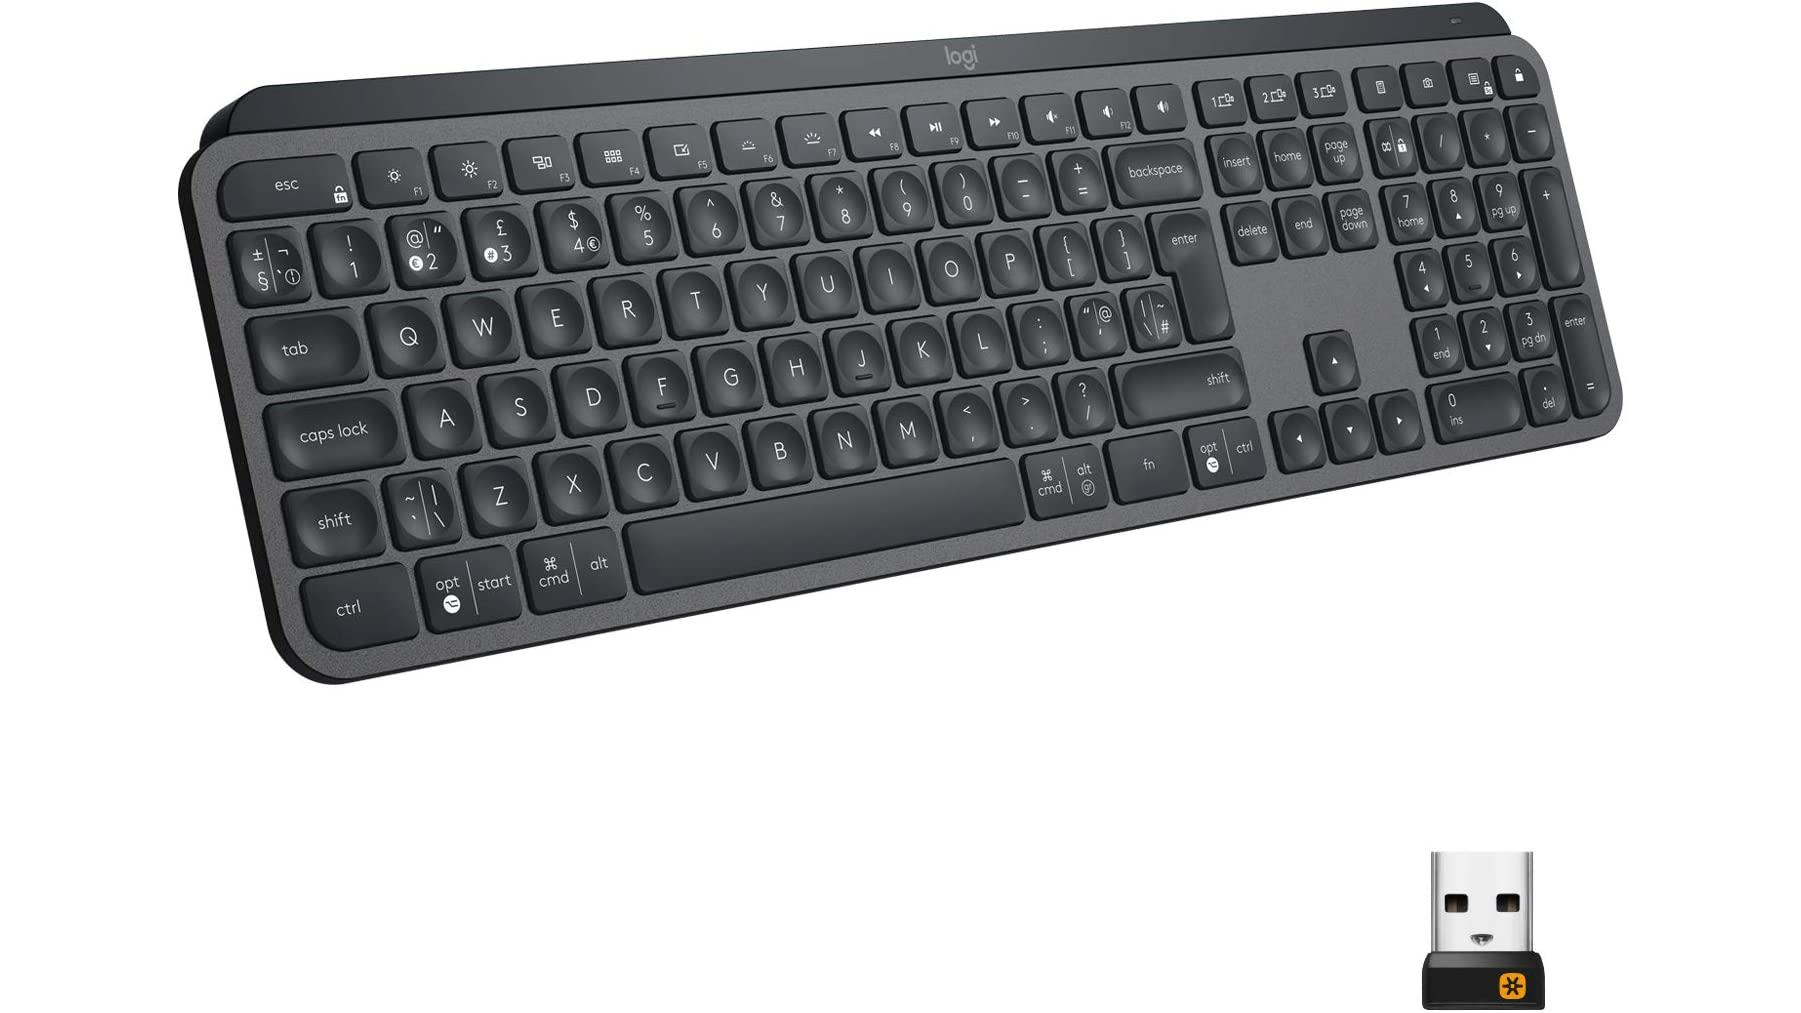 logitech mx keys keyboard full-size uk shown with wireless adapter